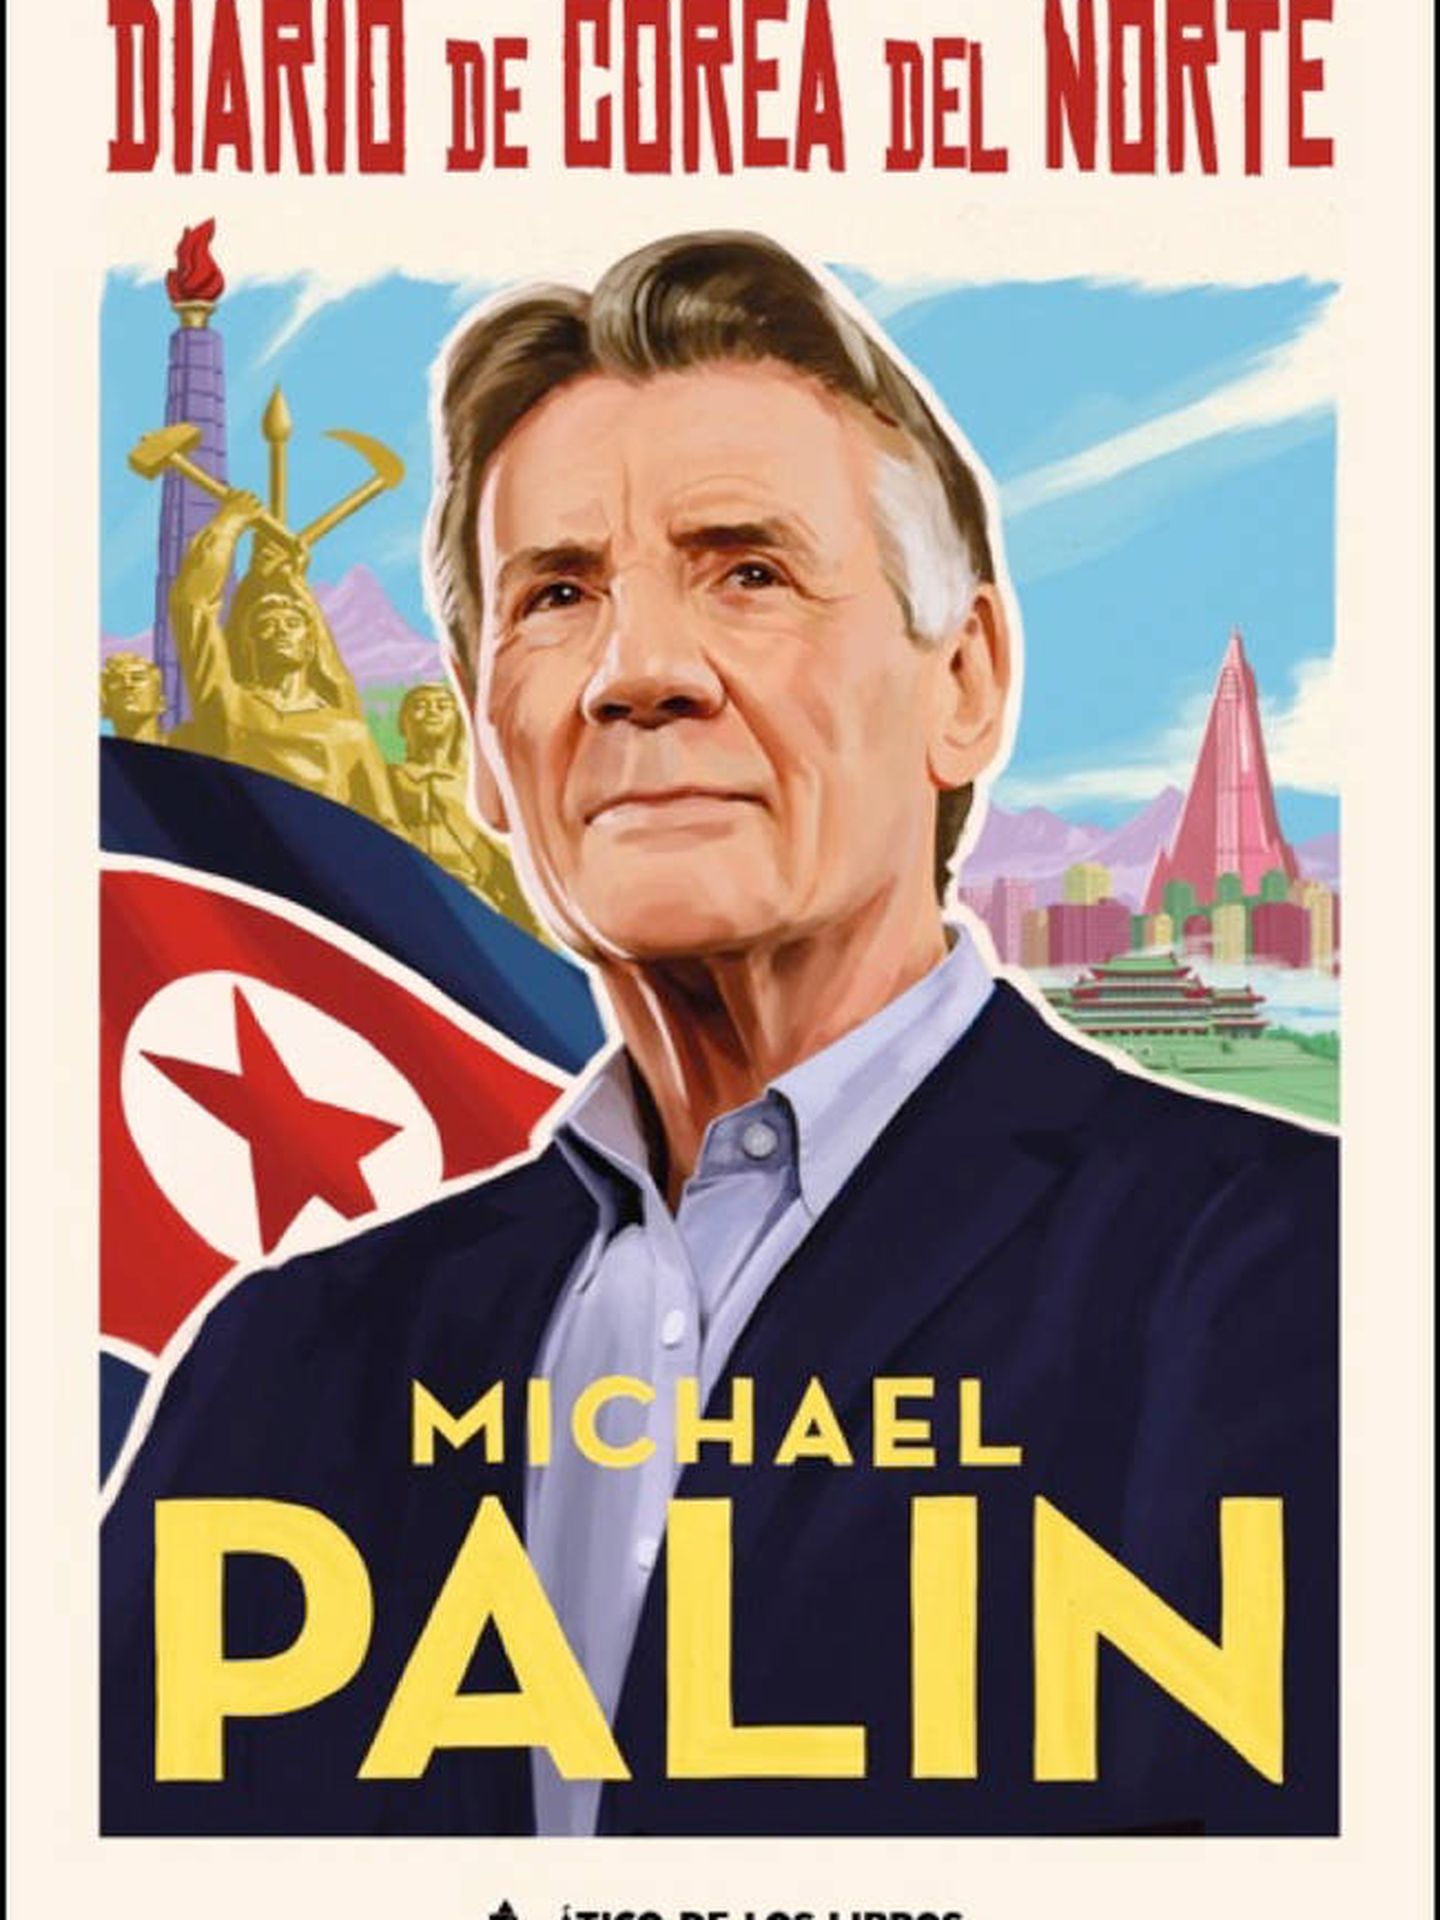 'Diario de Corea del Norte', de Michael Palin